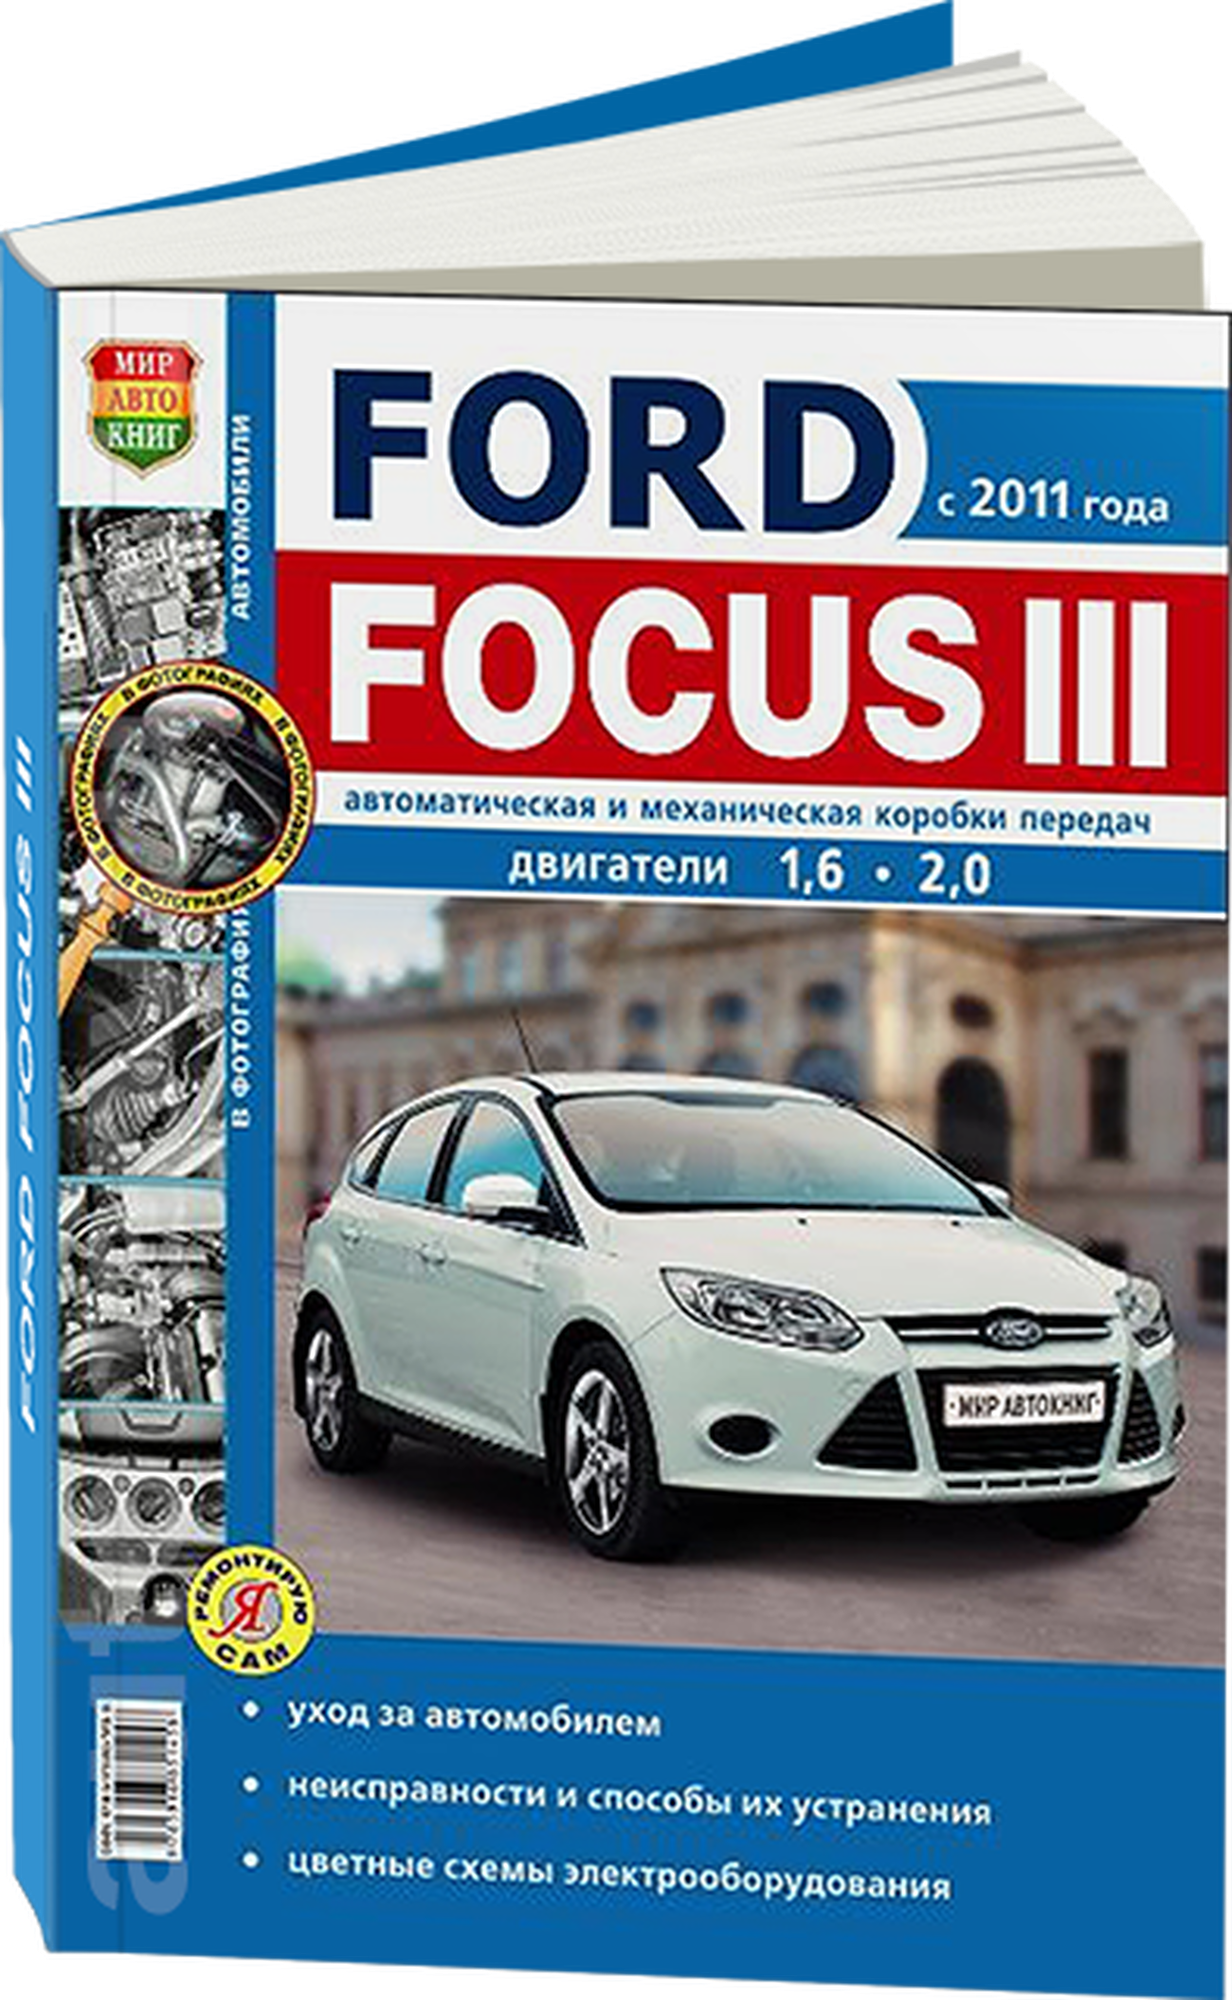 Автокнига: руководство / инструкция по ремонту и эксплуатации FORD FOCUS 3 (форд фокус 3) бензин с 2011 года выпуска, 978-5-91685-145-8, издательство Мир Автокниг